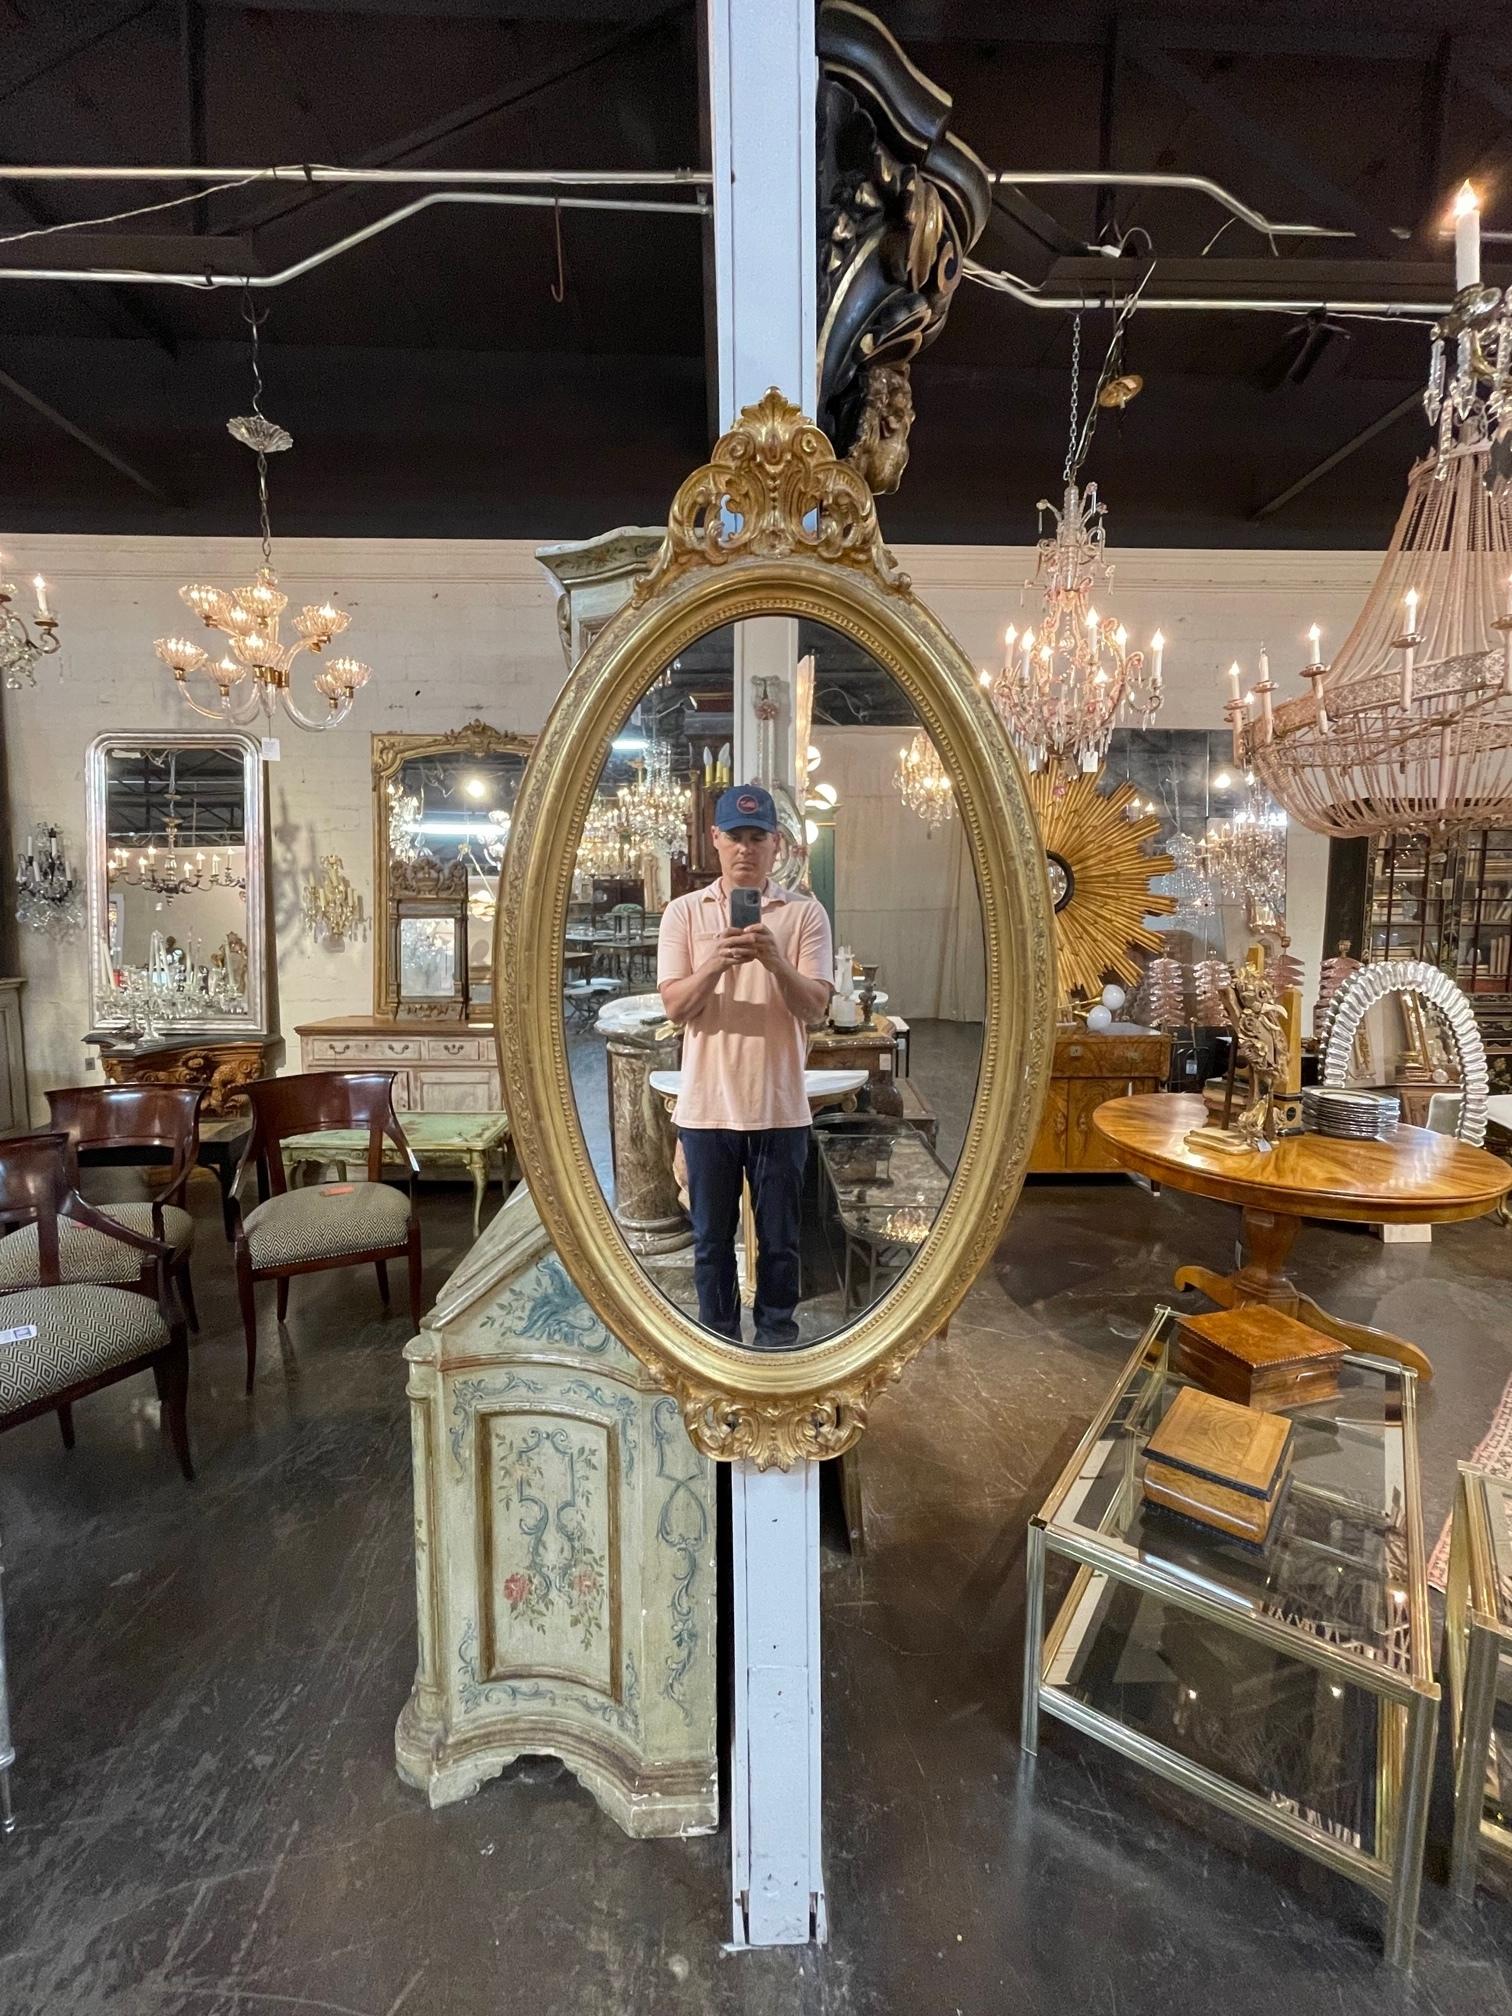 Exquis miroir ovale en bois sculpté et doré de style George III du 19e siècle. Il présente des sculptures très fines en haut et en bas du miroir. Ajoute une véritable touche d'élégance !